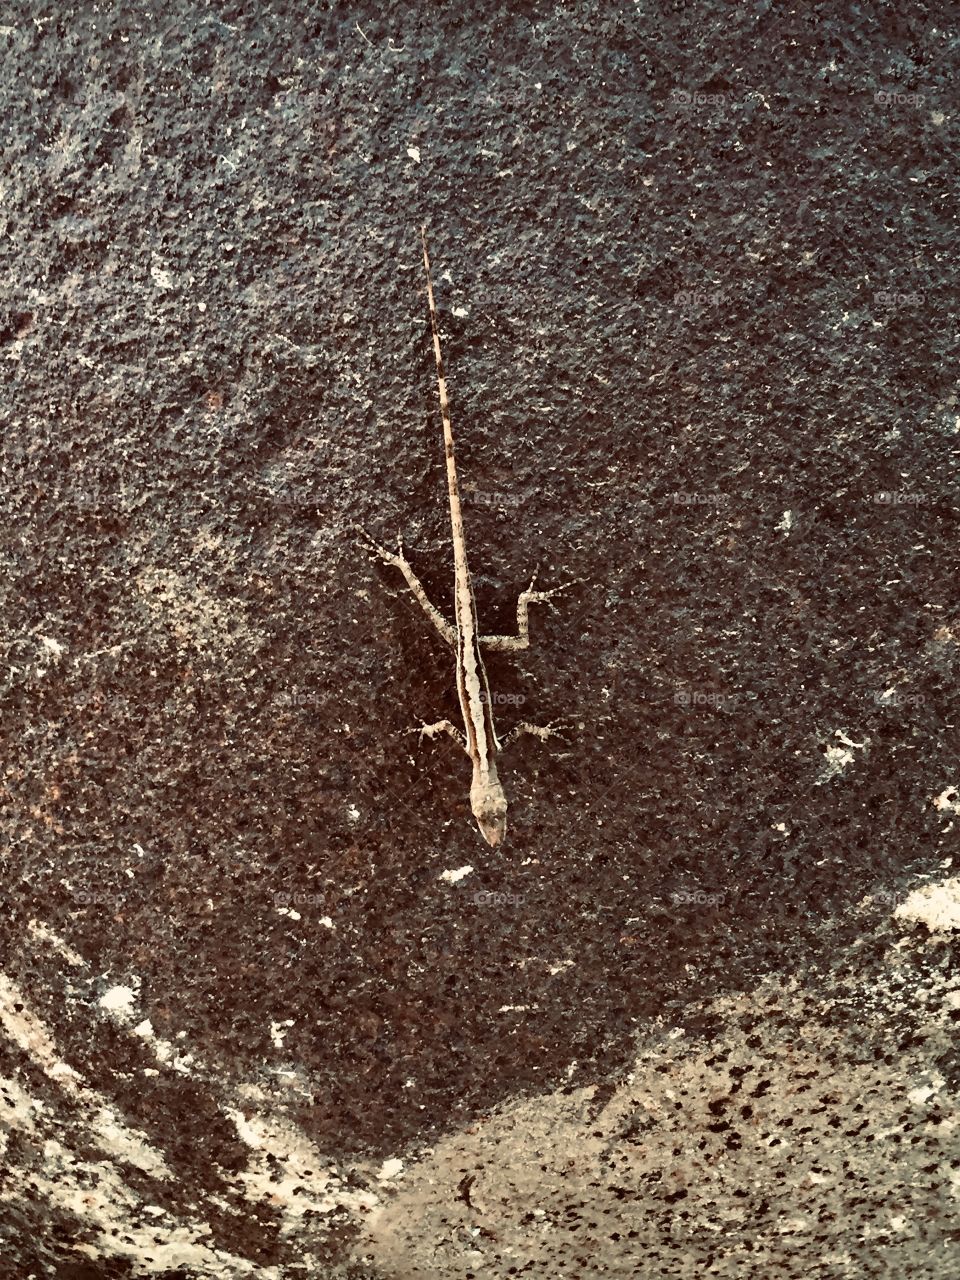 Lizard on the rock